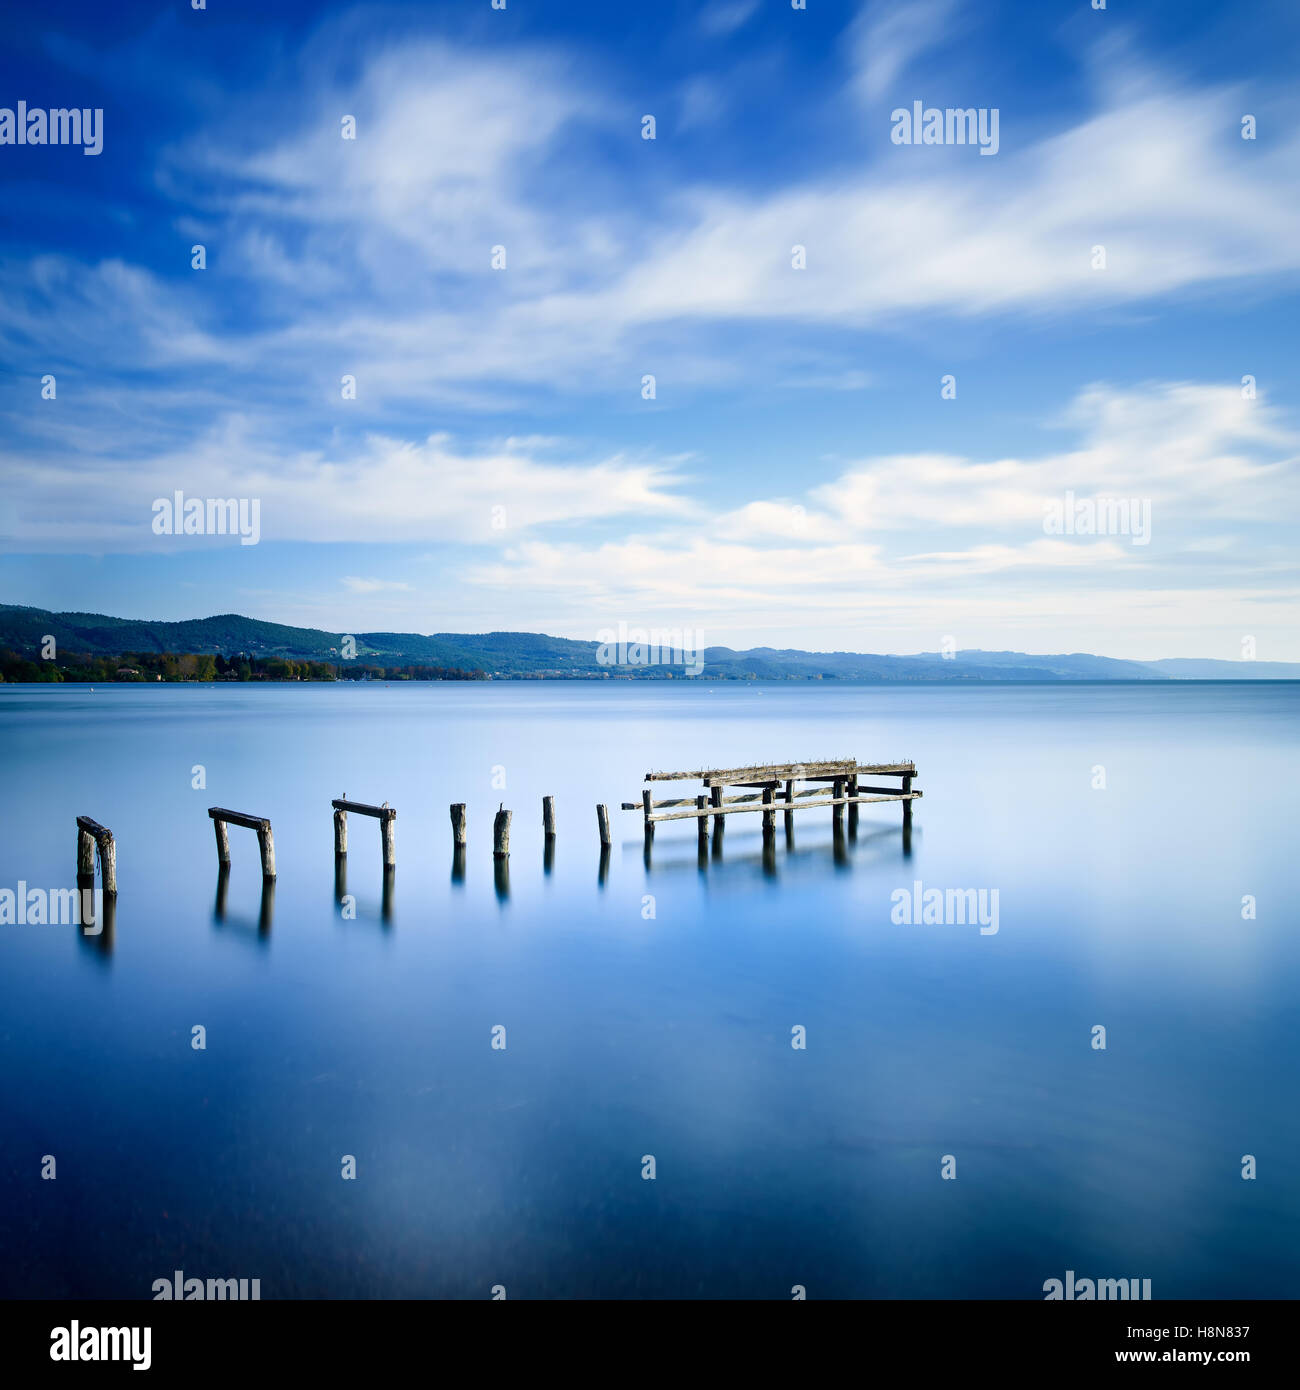 Hölzerne Pier oder Steg bleibt auf einen blauen See Sonnenuntergang. Lange Belichtung Fotografie Stockfoto